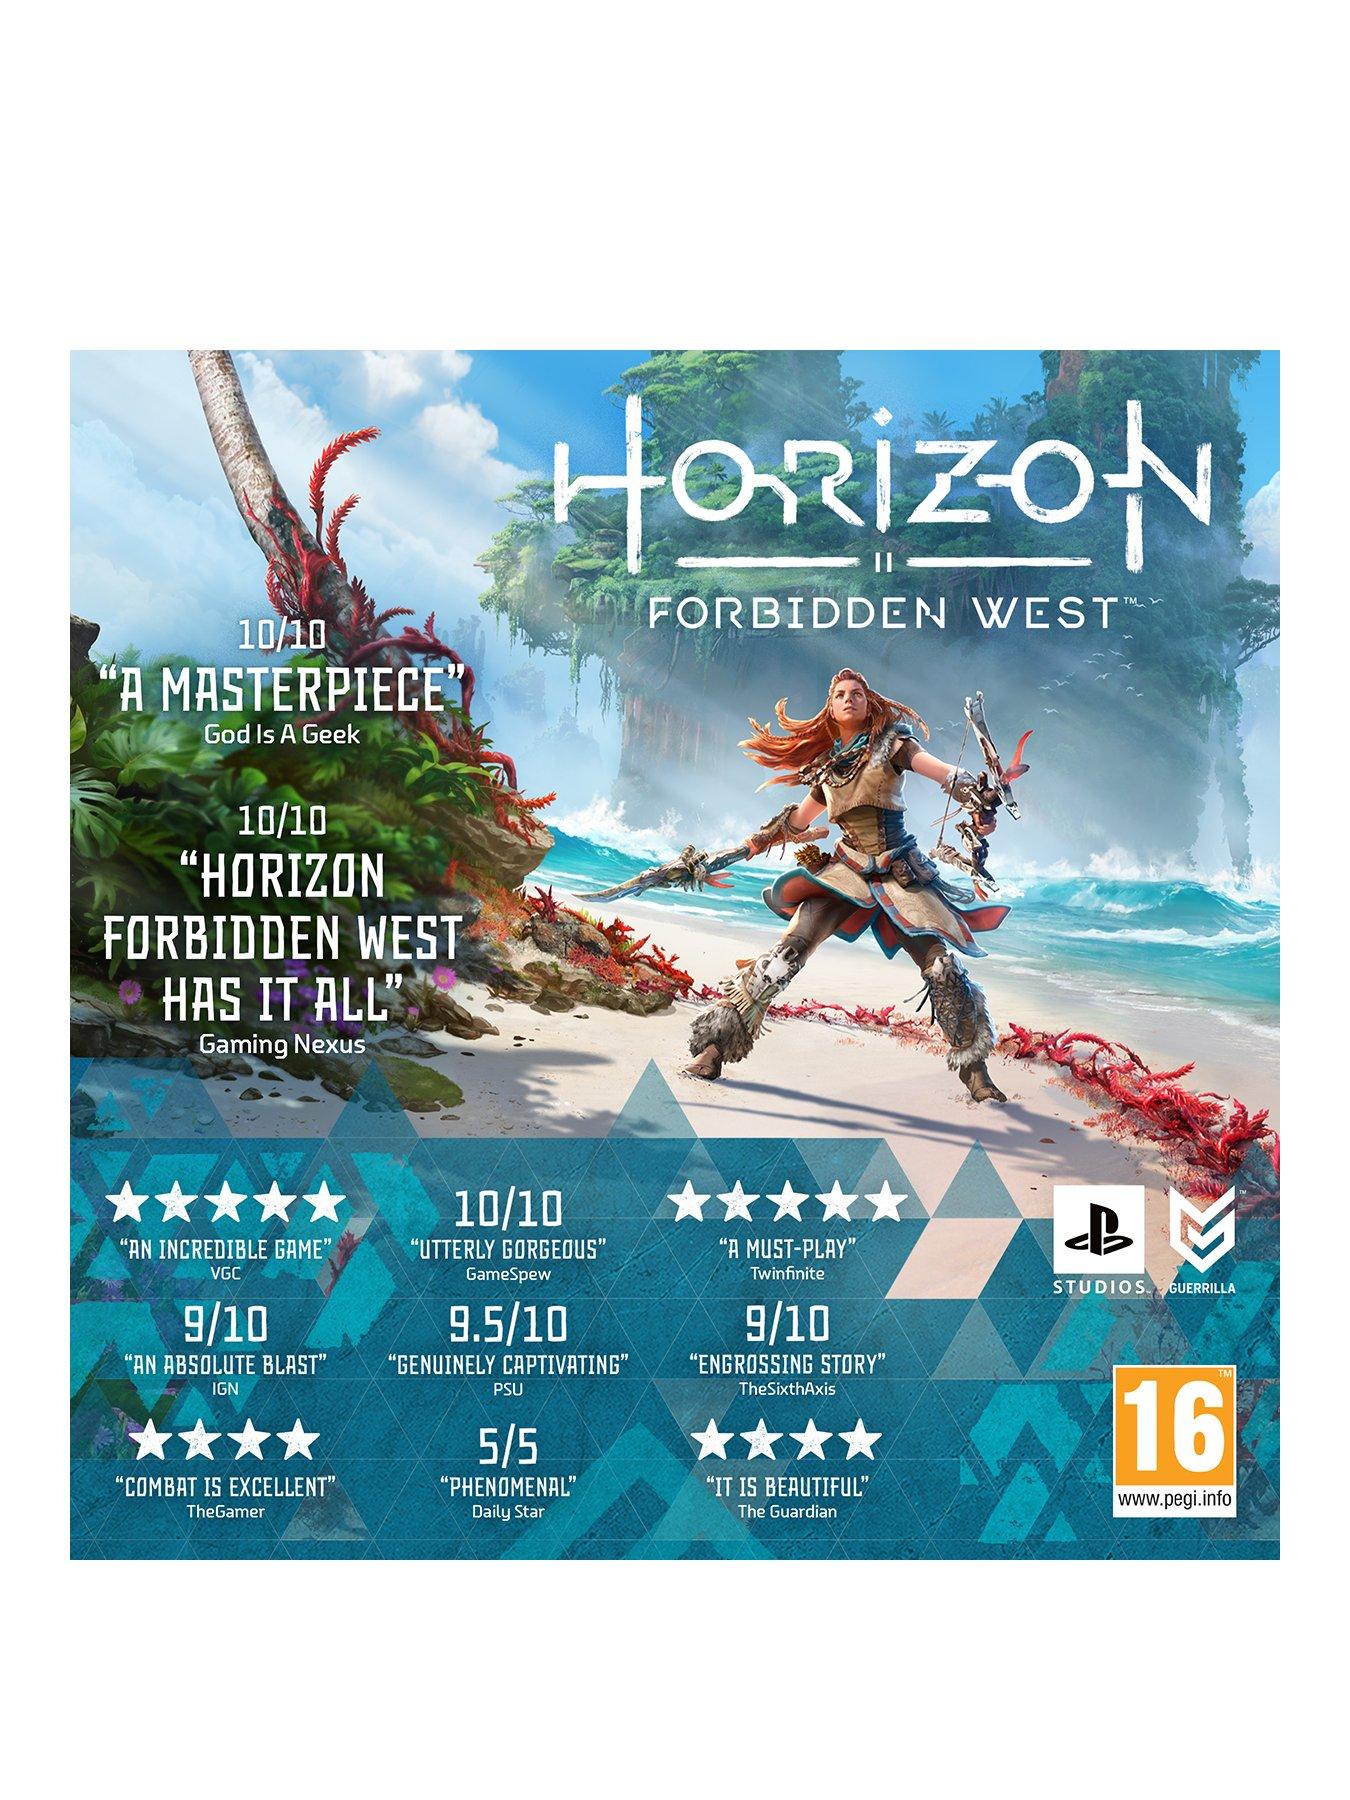 Horizon Forbidden West (PS4) preço mais barato: 14,61€